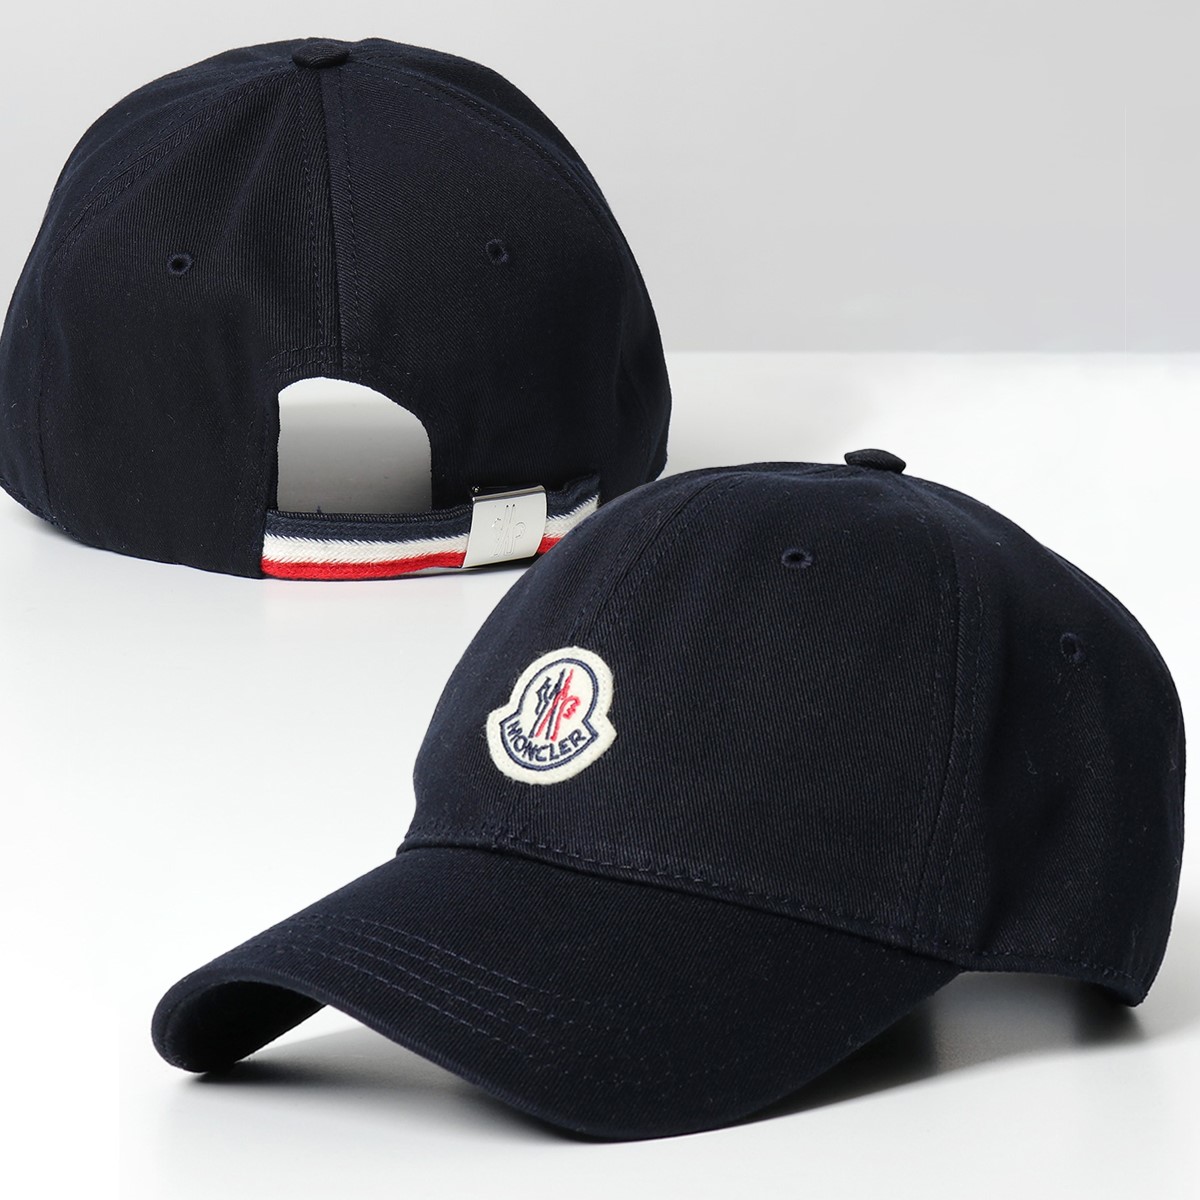 MONCLER モンクレール ベースボールキャップ BERRETTO BASEBALL 3B00054 V0090 レディース スポーツ ロゴパッチ  帽子 カラー2色